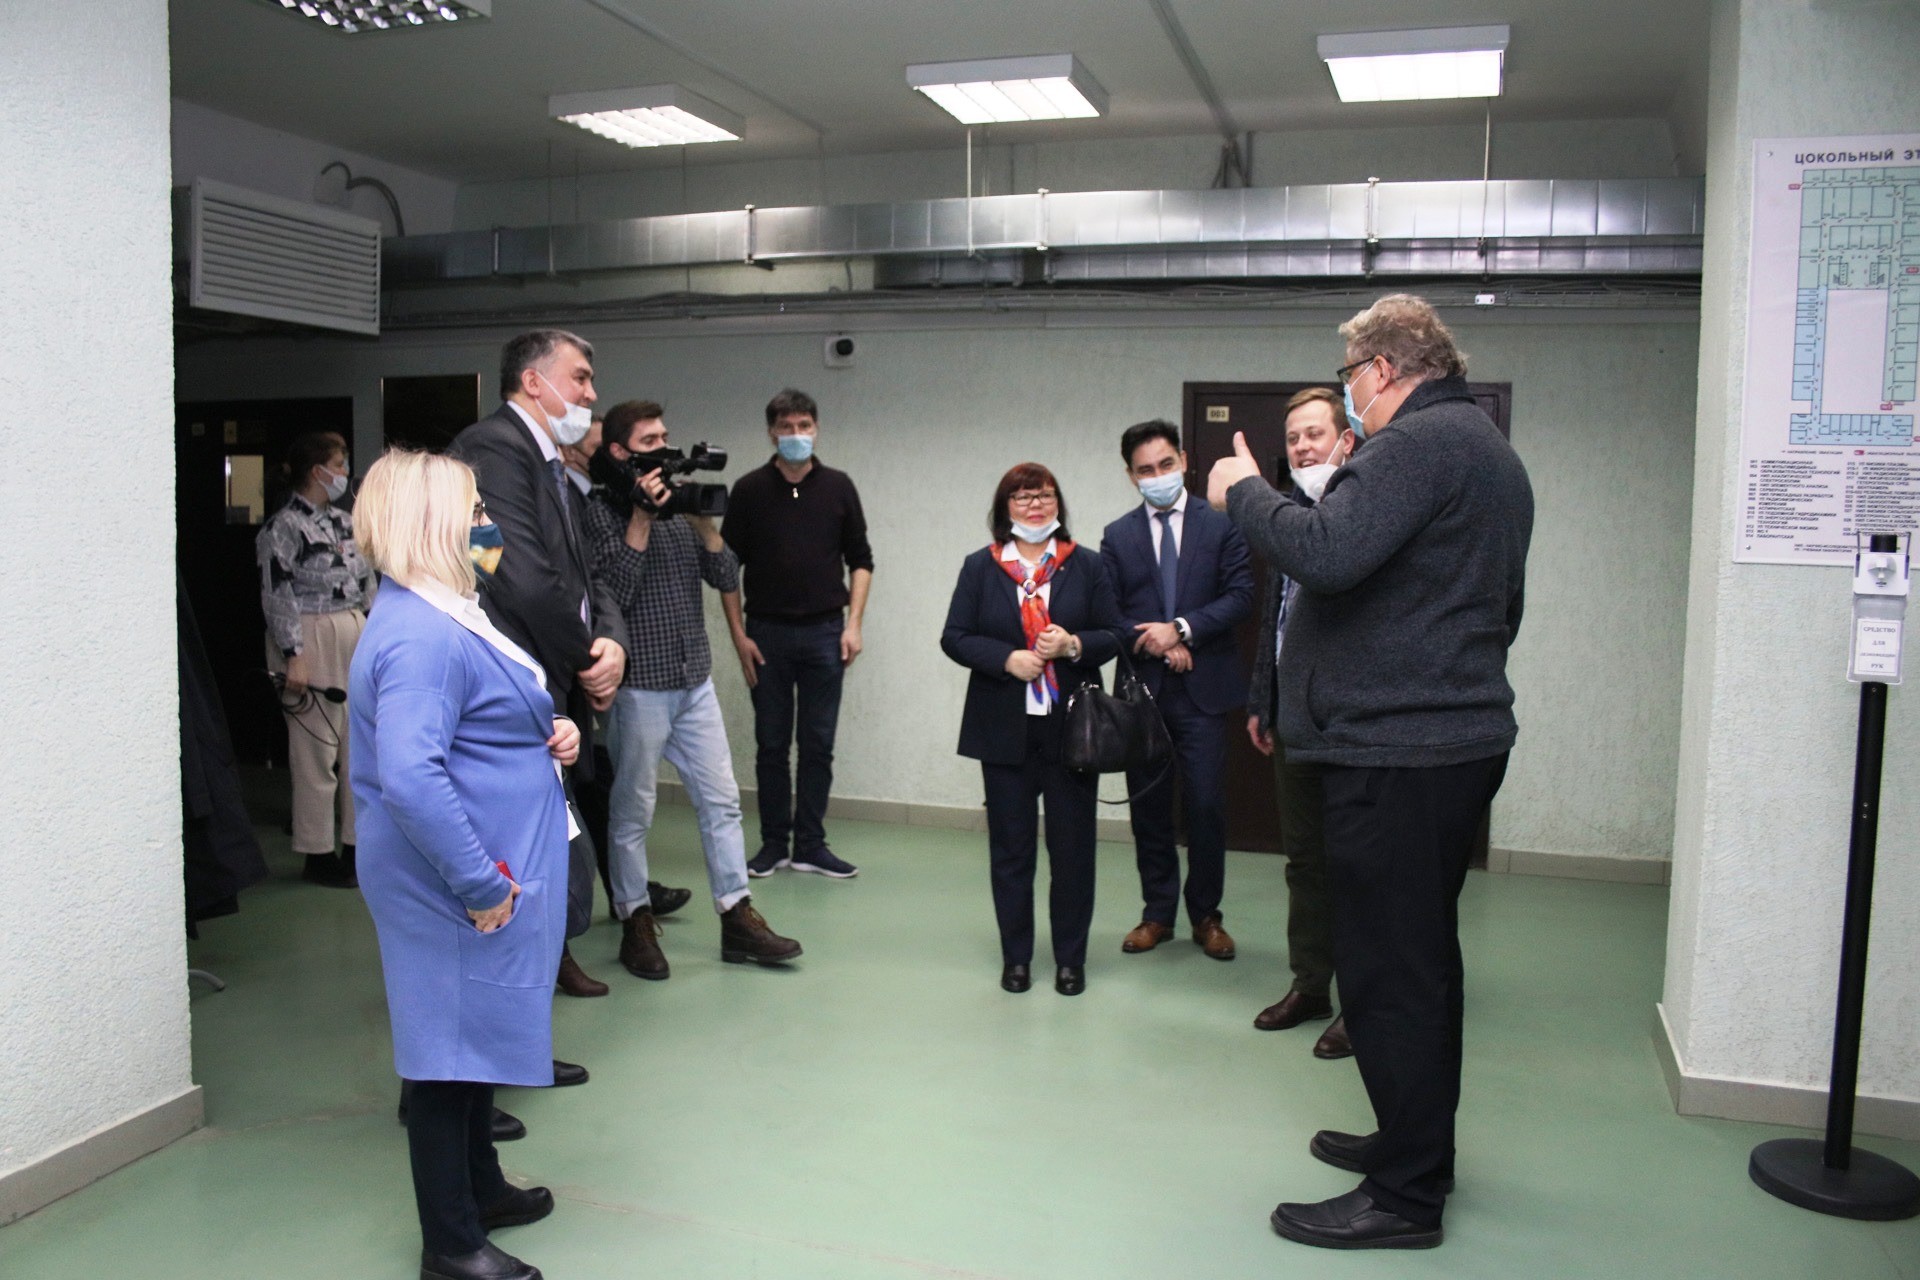 University toured by delegation of Arkhangelsk Oblast ,Arkhangelsk Oblast, Northern Federal University